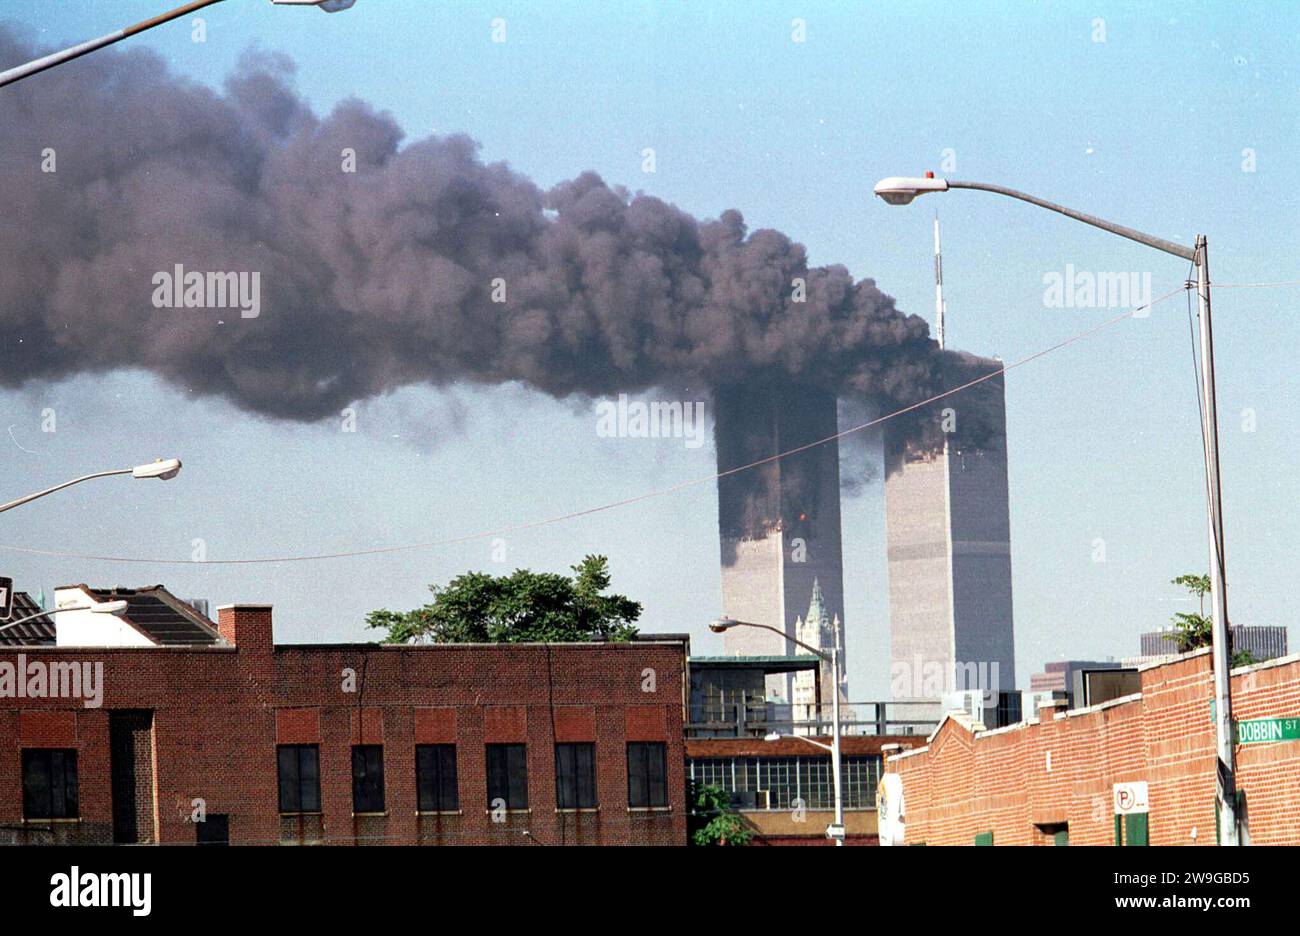 Aktenfoto vom 11/9/2001, eine Ansicht der World Trade Center Towers nach einem entführten Flugangriff auf jedes Gebäude in Lower Manhattan. Nordirland bestand in der Folge des 11. Septembers möglicherweise das Risiko, von einem nuklearen oder chemischen Angriff betroffen zu werden, wie aus Archivakten der damaligen Zeit hervorgeht. Die Beamten wurden auf die Notwendigkeit hingewiesen, medizinische Vorräte anzuhäufen, da sie vor der Möglichkeit gewarnt wurden, dass eine Atombombe in der Region explodiert oder der Nervensäge Sarin gegen die Zivilbevölkerung eingesetzt werden könnte. Ausgabedatum: Donnerstag, 28. Dezember 2023. Stockfoto